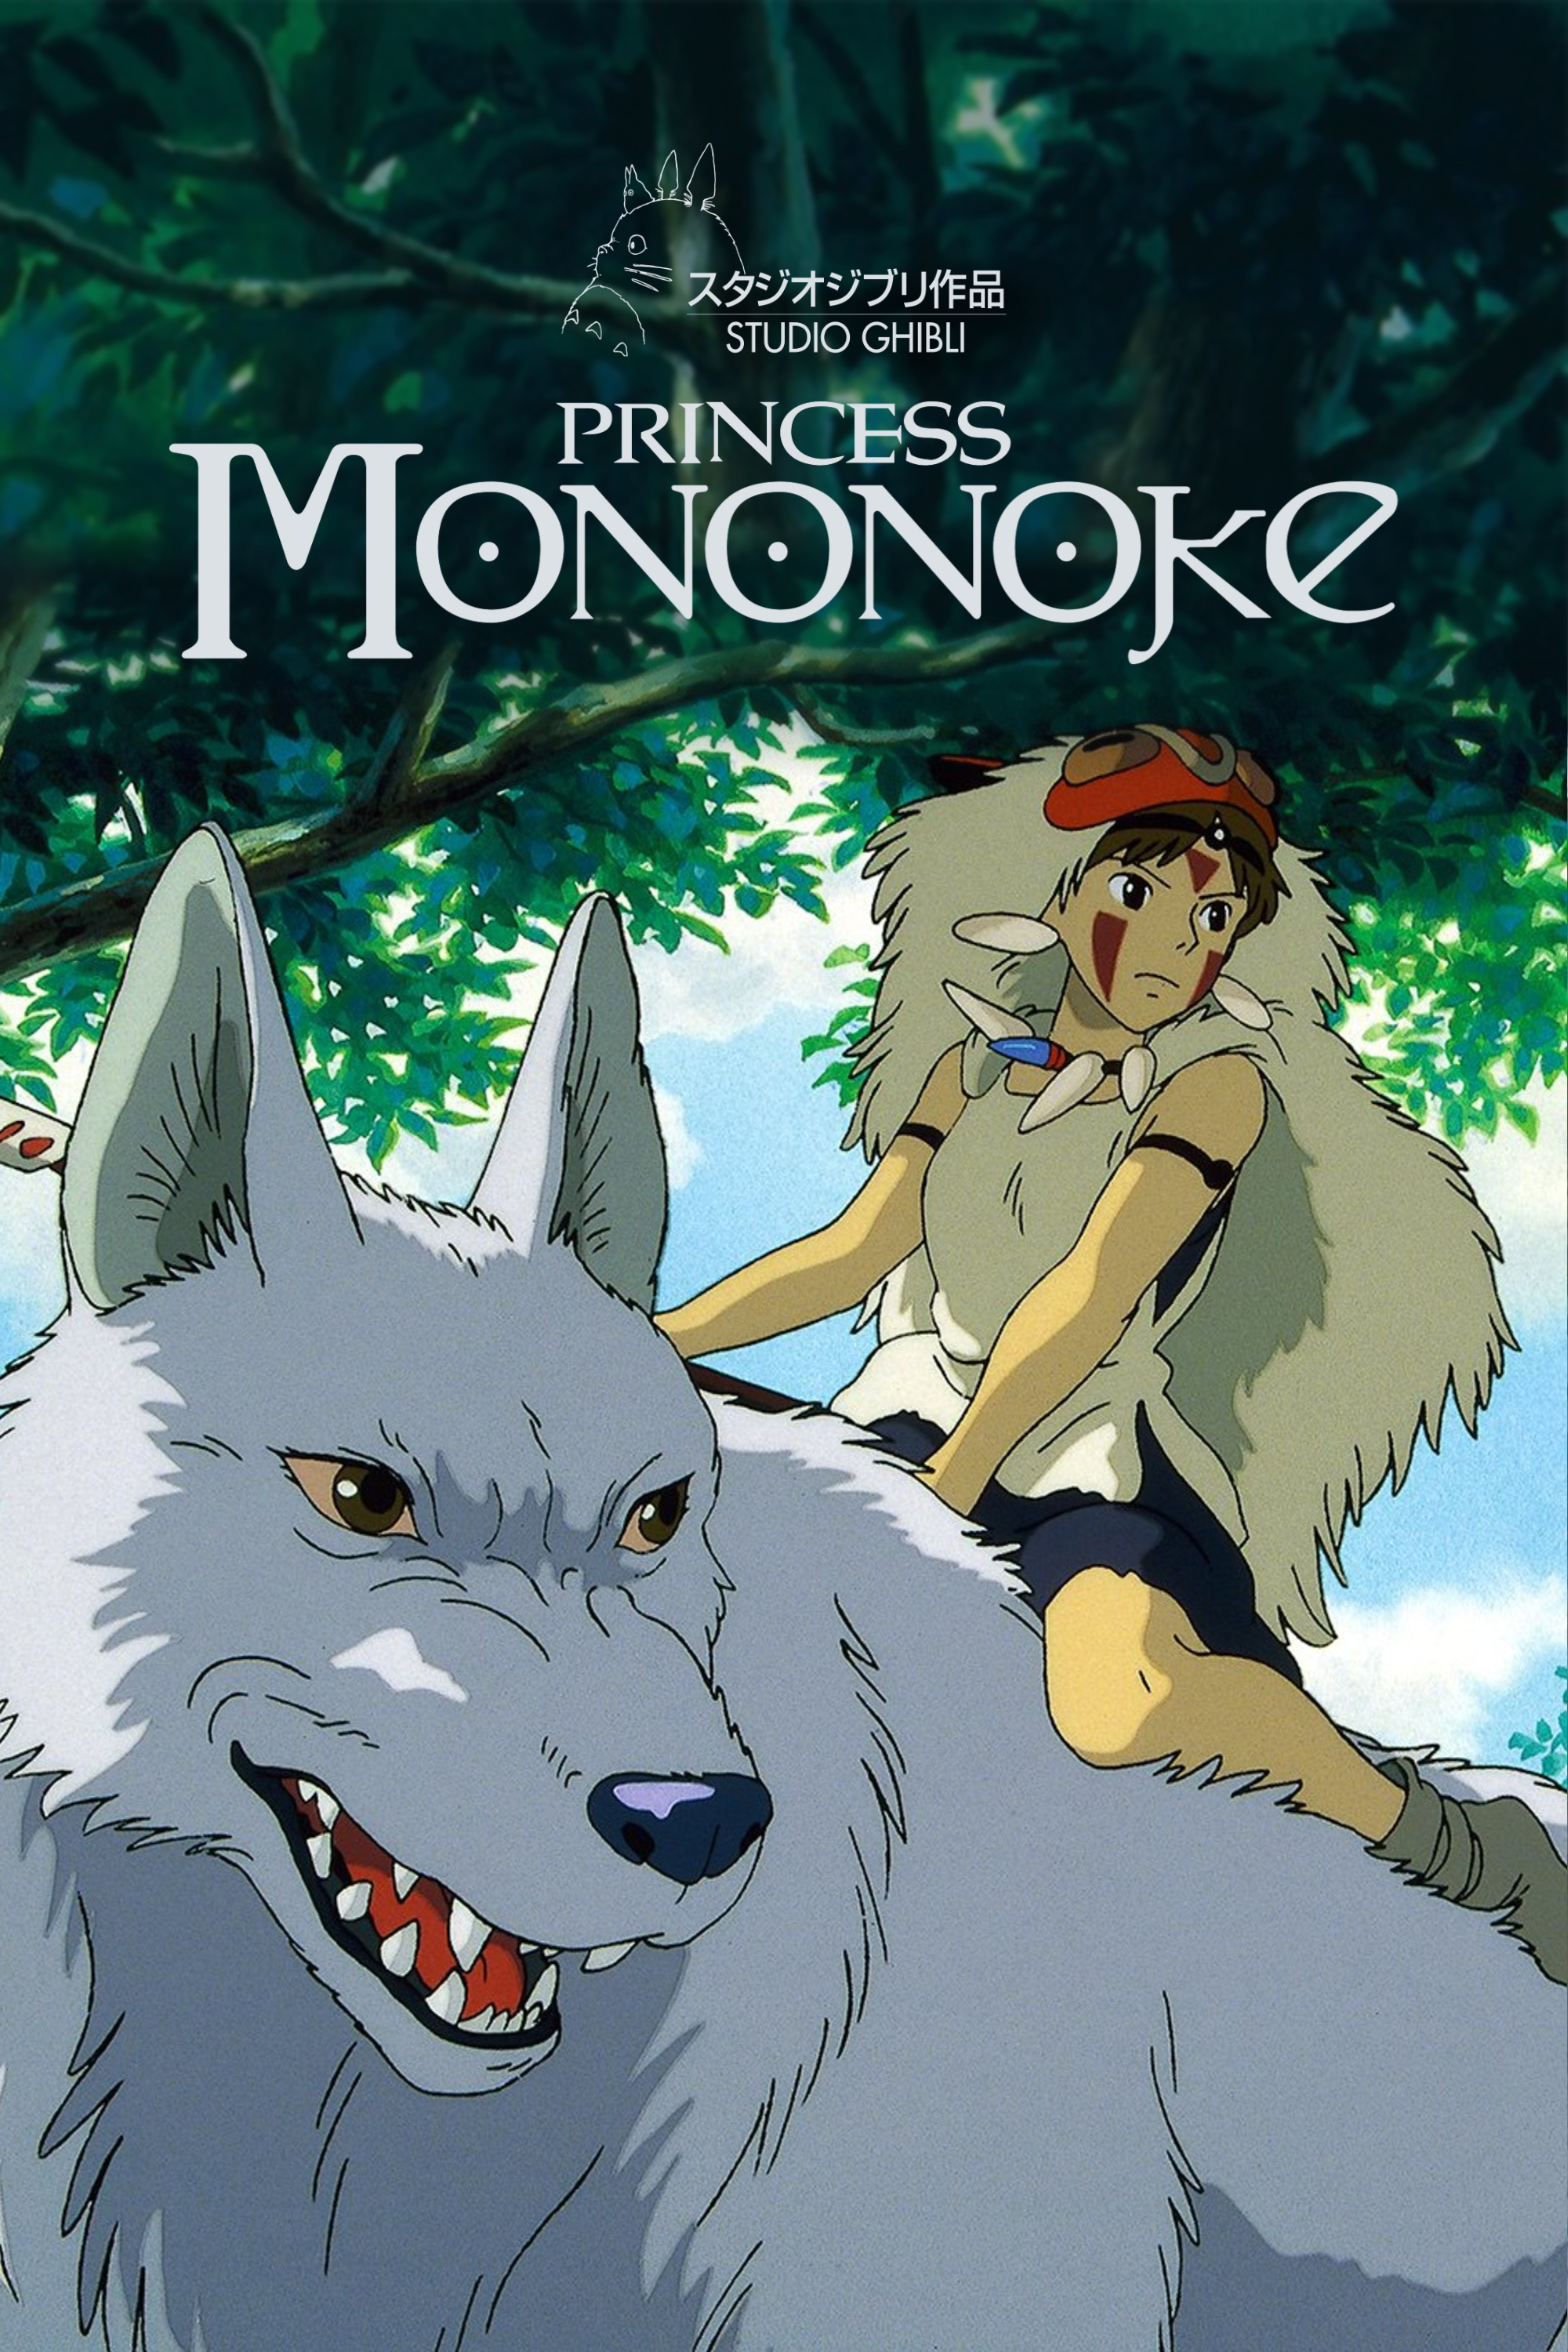 Princess Mononoke Manga Studio Ghibli Japanese Comic Kanji Hiragana Set 4 Books Other Anime Collectibles Collectibles